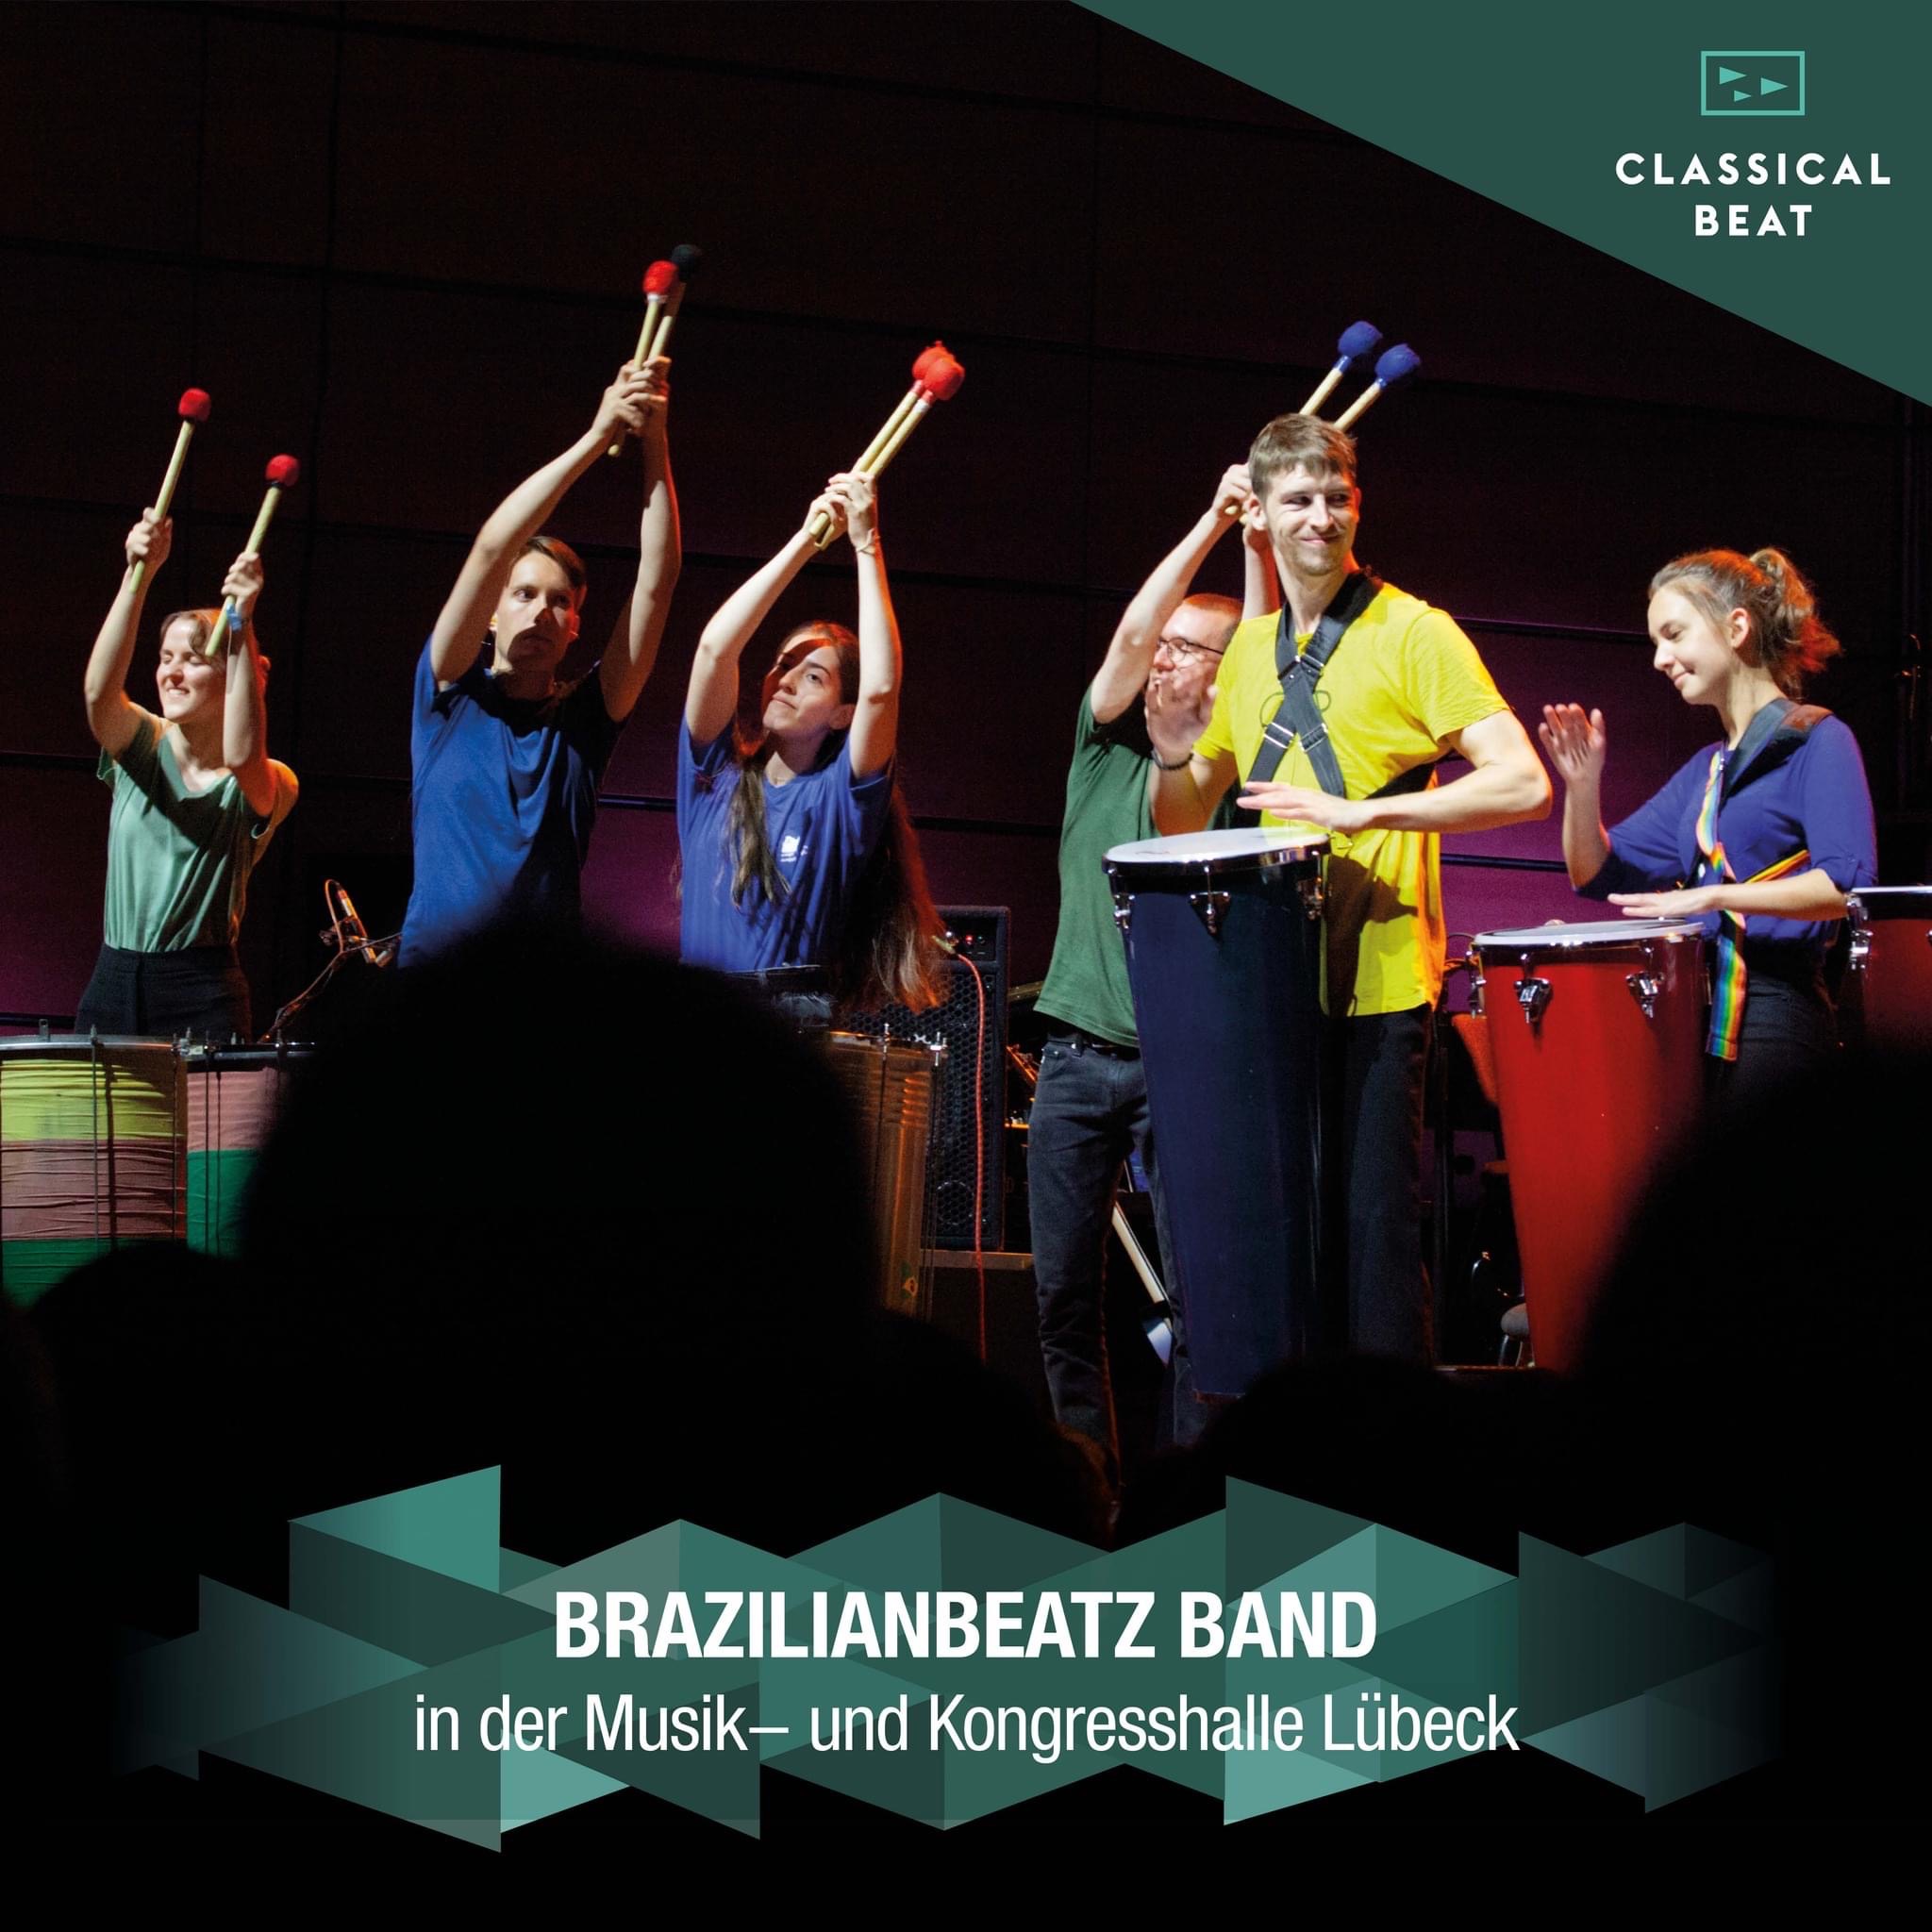 BrazilianBeatz mit "Funky-Samba" in der Musik- und Kongresshalle Lübeck am 21. Juli 2022 (© Classical Beat)